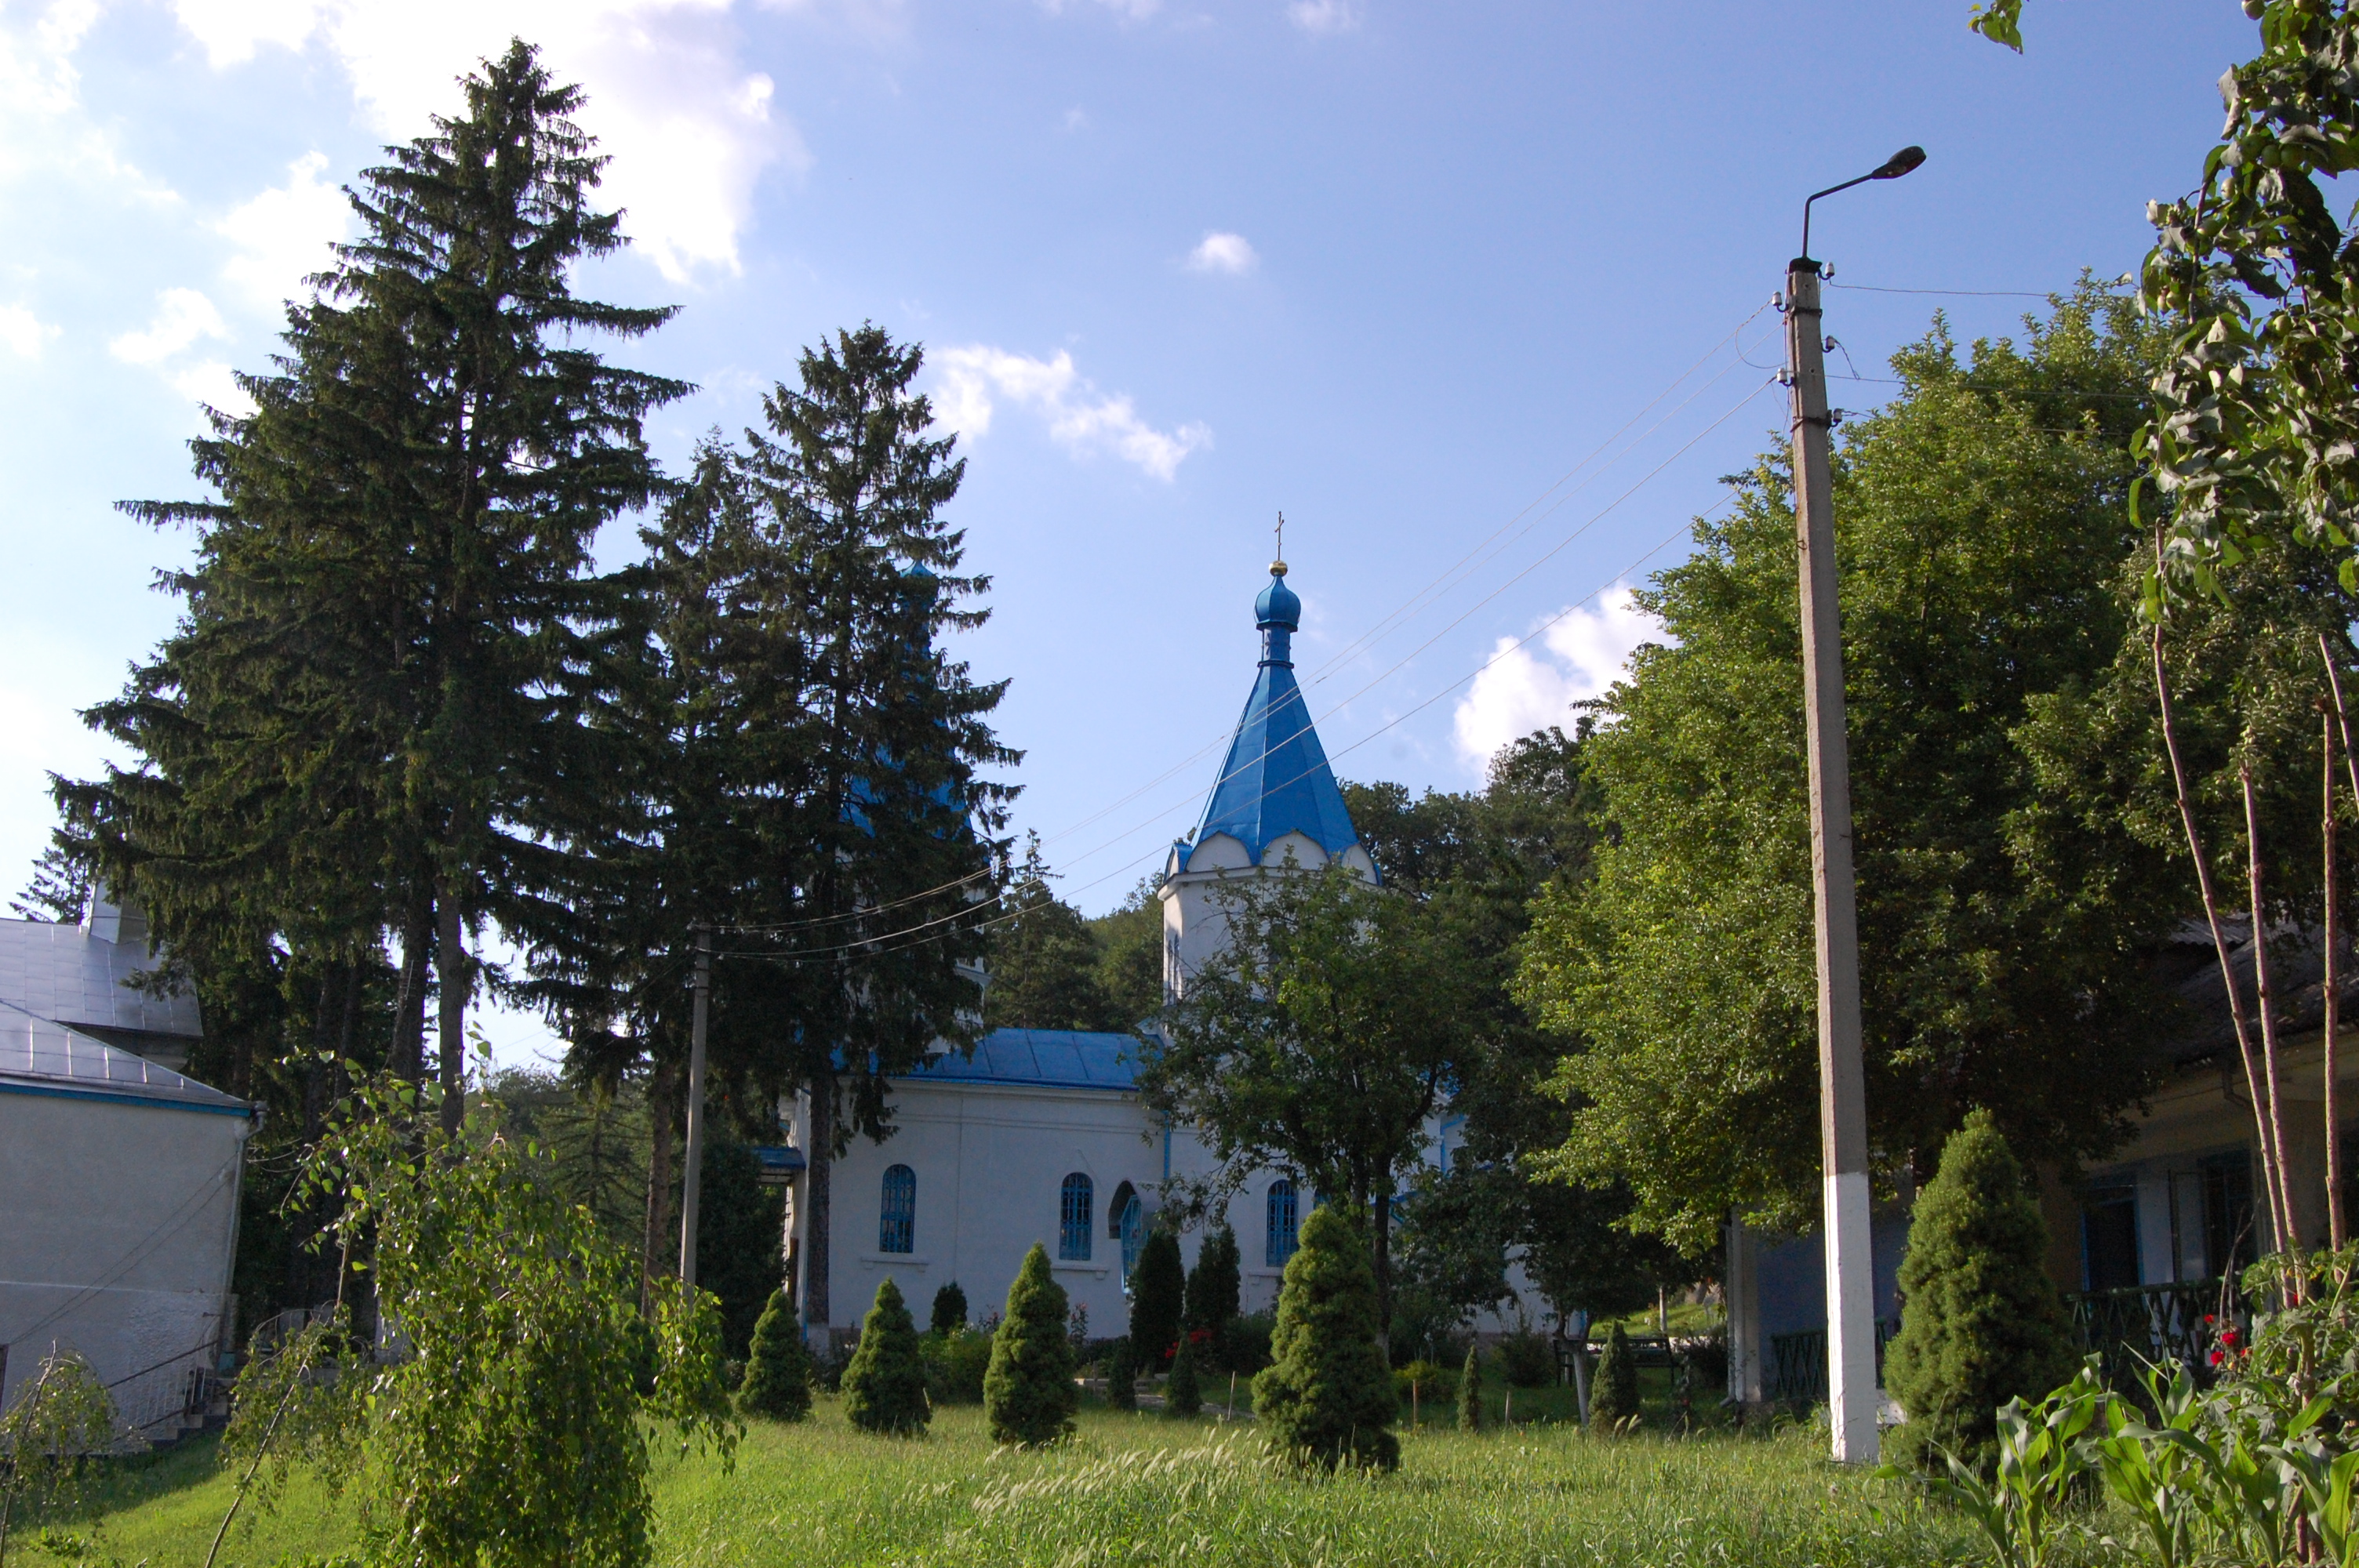 MD, Raionul Străşeni, Satul Ţigăneşti, Manastirea Tiganesti, Biserica